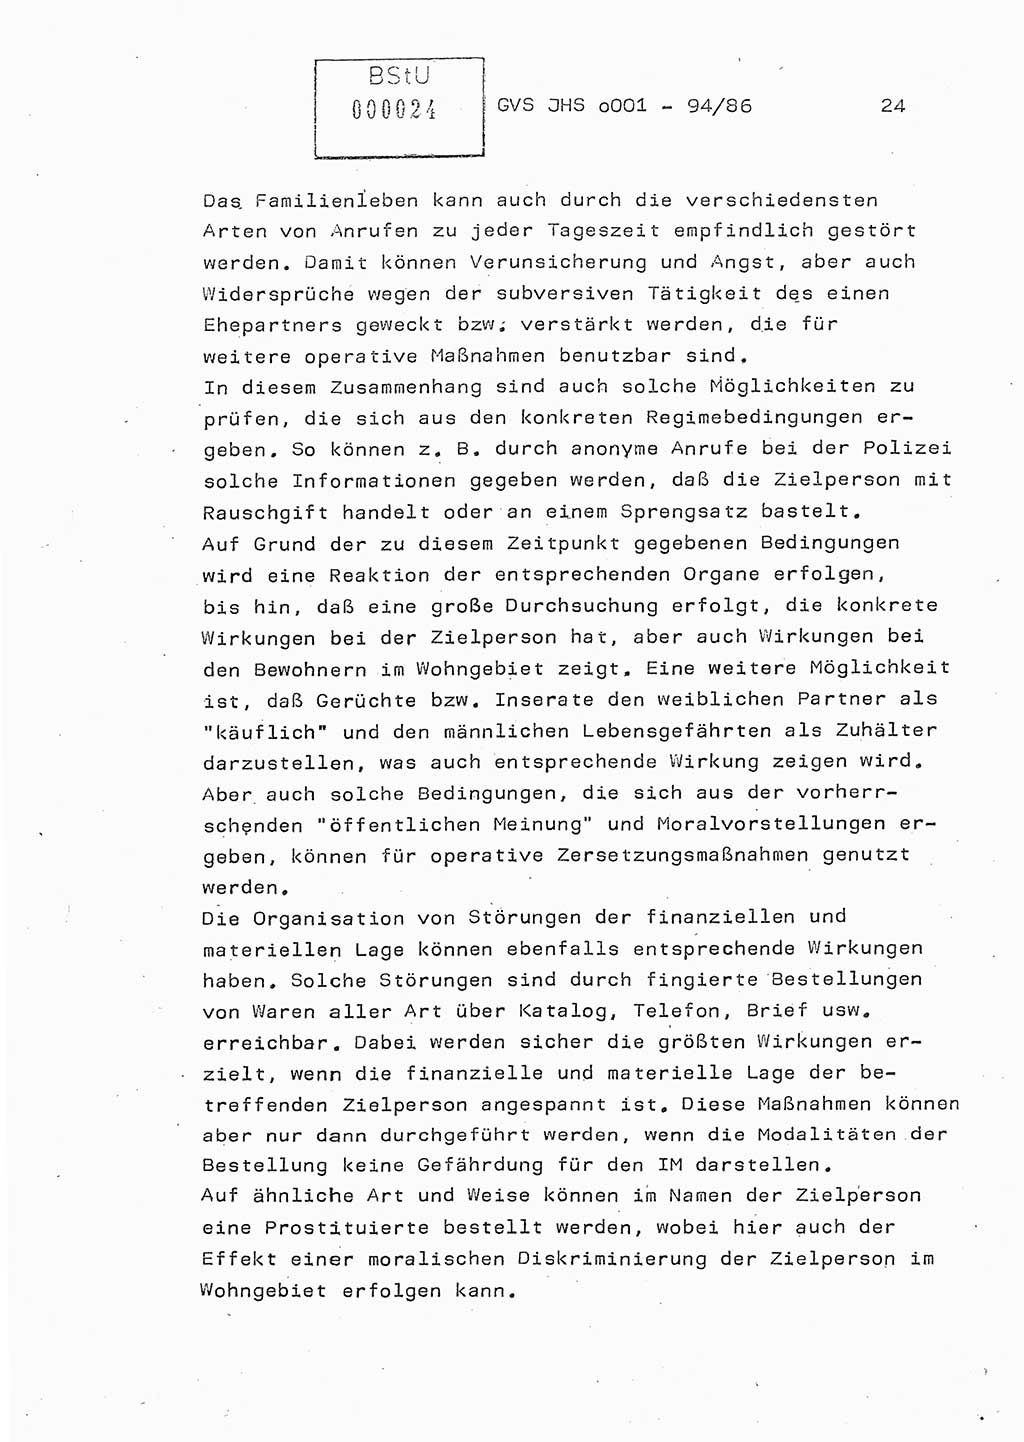 Diplomarbeit Oberleutnant Volkmar Pechmann (HA ⅩⅩ/5), Ministerium für Staatssicherheit (MfS) [Deutsche Demokratische Republik (DDR)], Juristische Hochschule (JHS), Geheime Verschlußsache (GVS) o001-94/86, Potsdam 1986, Blatt 24 (Dipl.-Arb. MfS DDR JHS GVS o001-94/86 1986, Bl. 24)